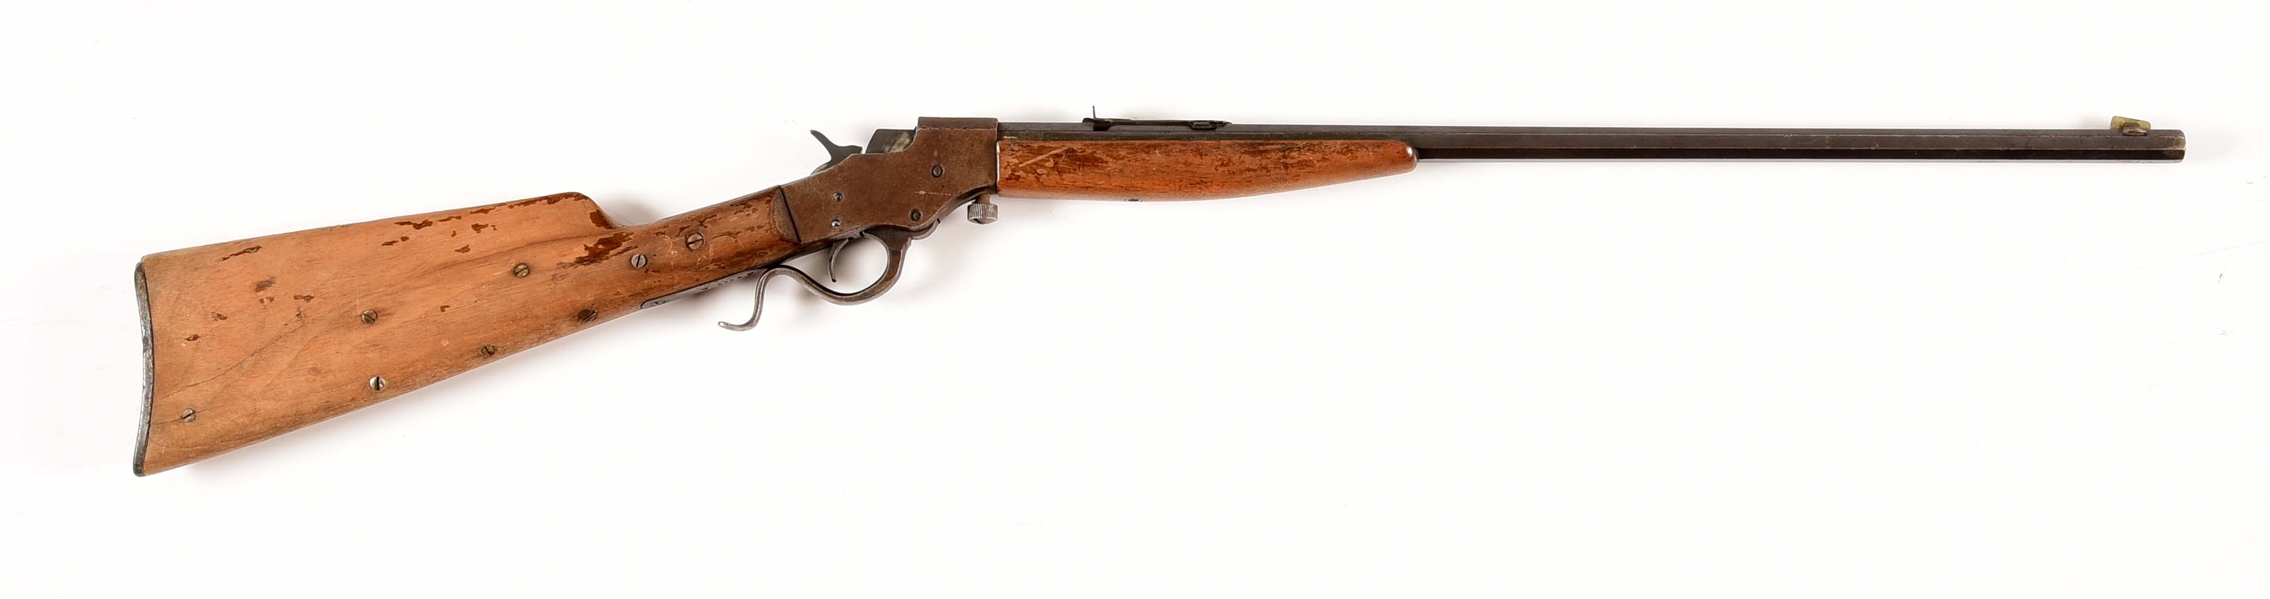 (C) STEVENS FAVORITE MODEL 1915 .22 LR SINGLE SHOT RIFLE.